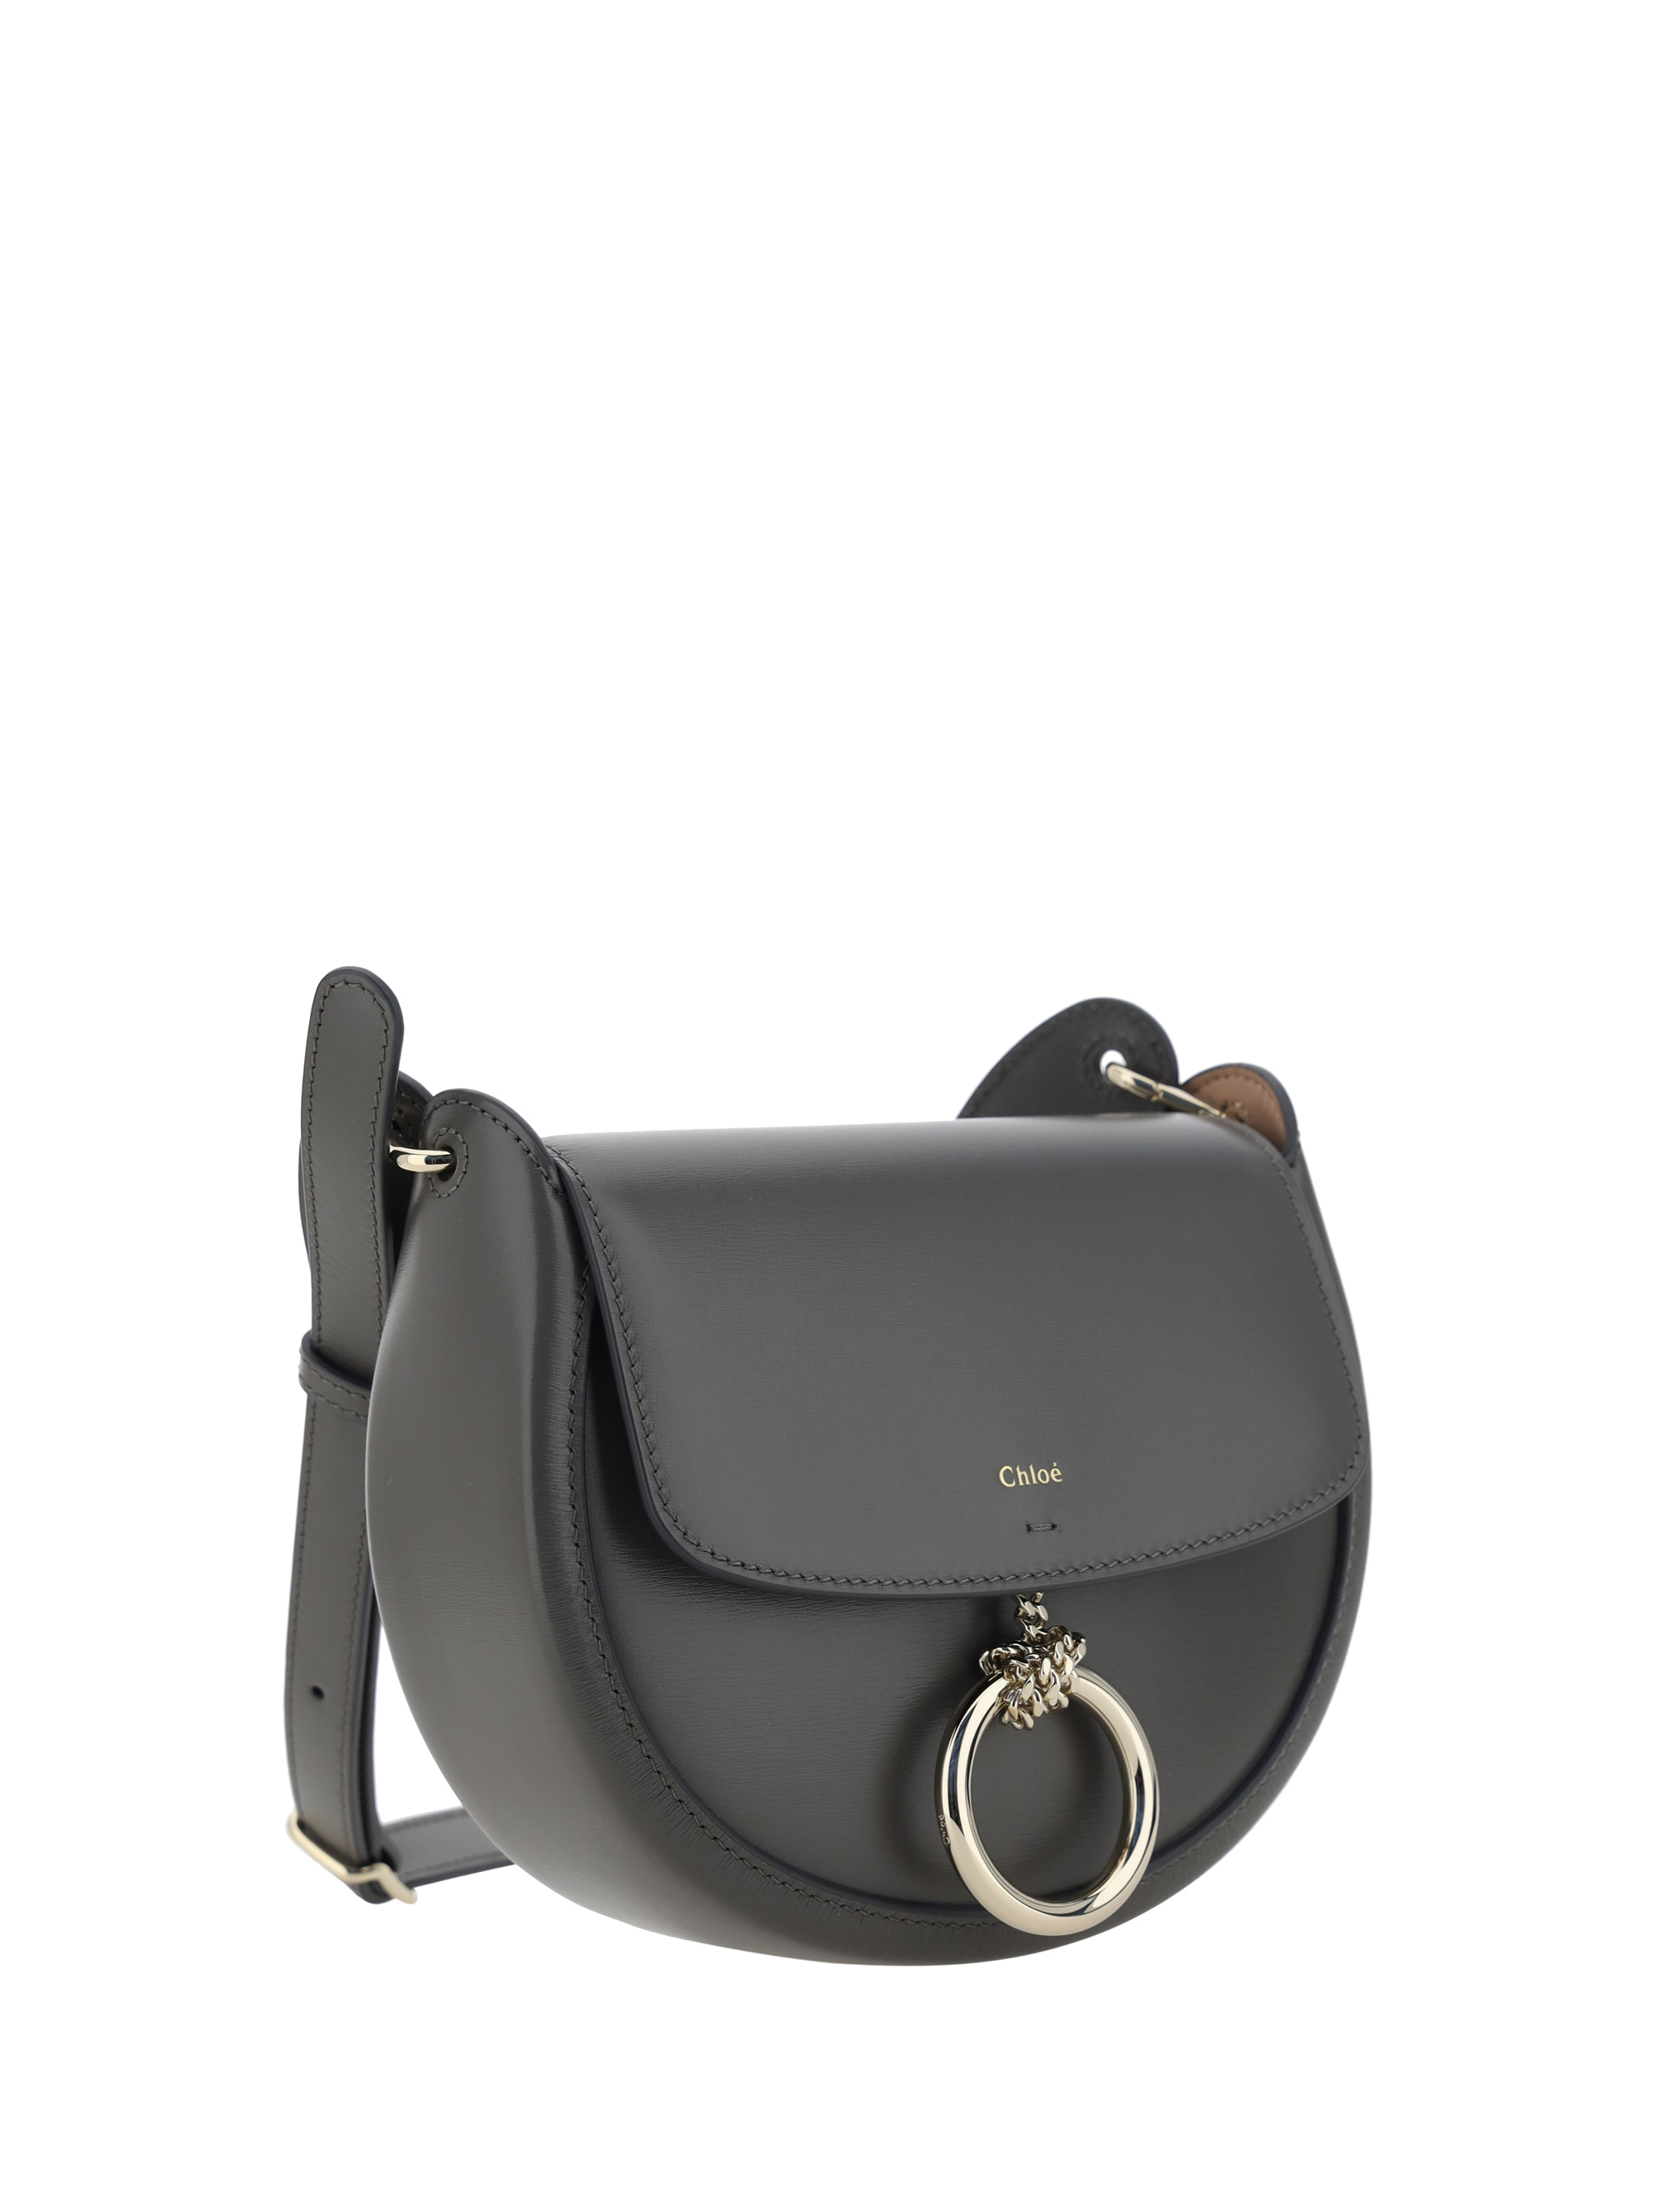 Arlene Small Leather Crossbody Bag in Grey - Chloe